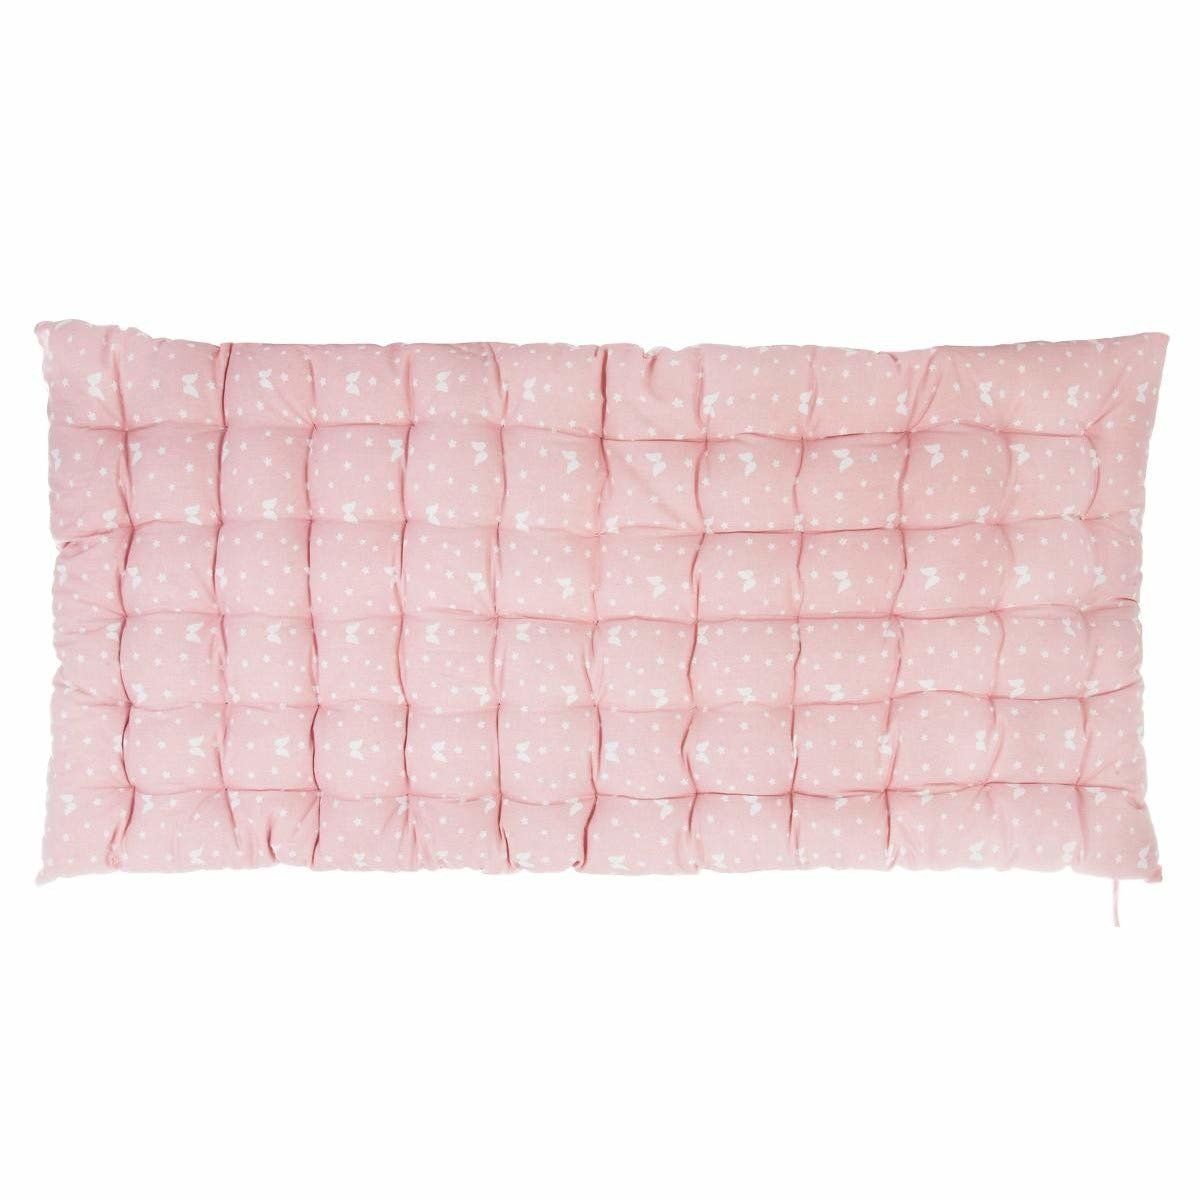 Atmosphera Růžová nafukovací matrace z bavlny, 120x60 cm - EMAKO.CZ s.r.o.